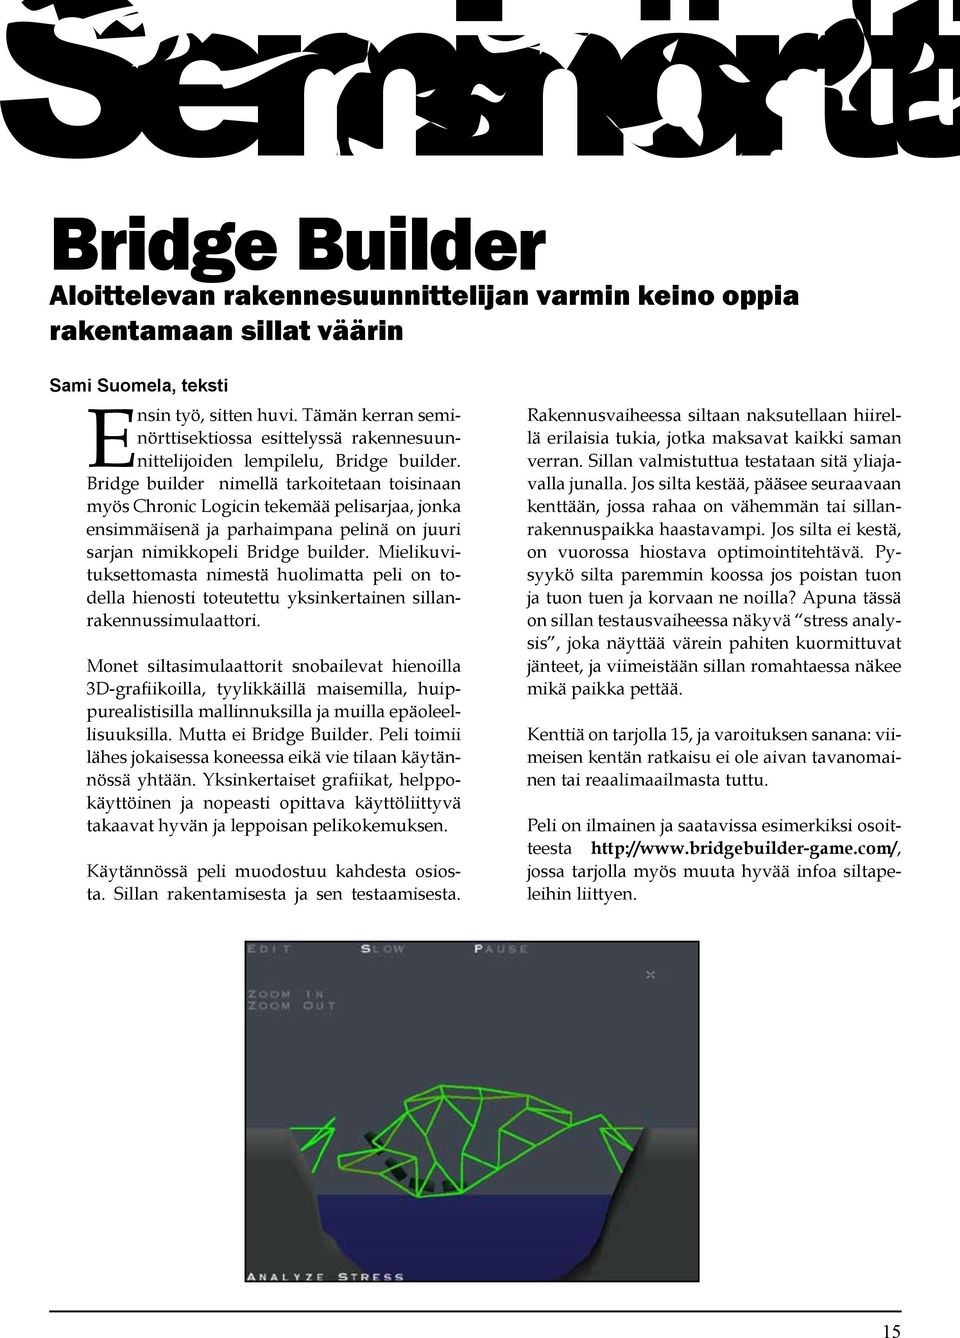 Bridge builder nimellä tarkoitetaan toisinaan myös Chronic Logicin tekemää pelisarjaa, jonka ensimmäisenä ja parhaimpana pelinä on juuri sarjan nimikkopeli Bridge builder.